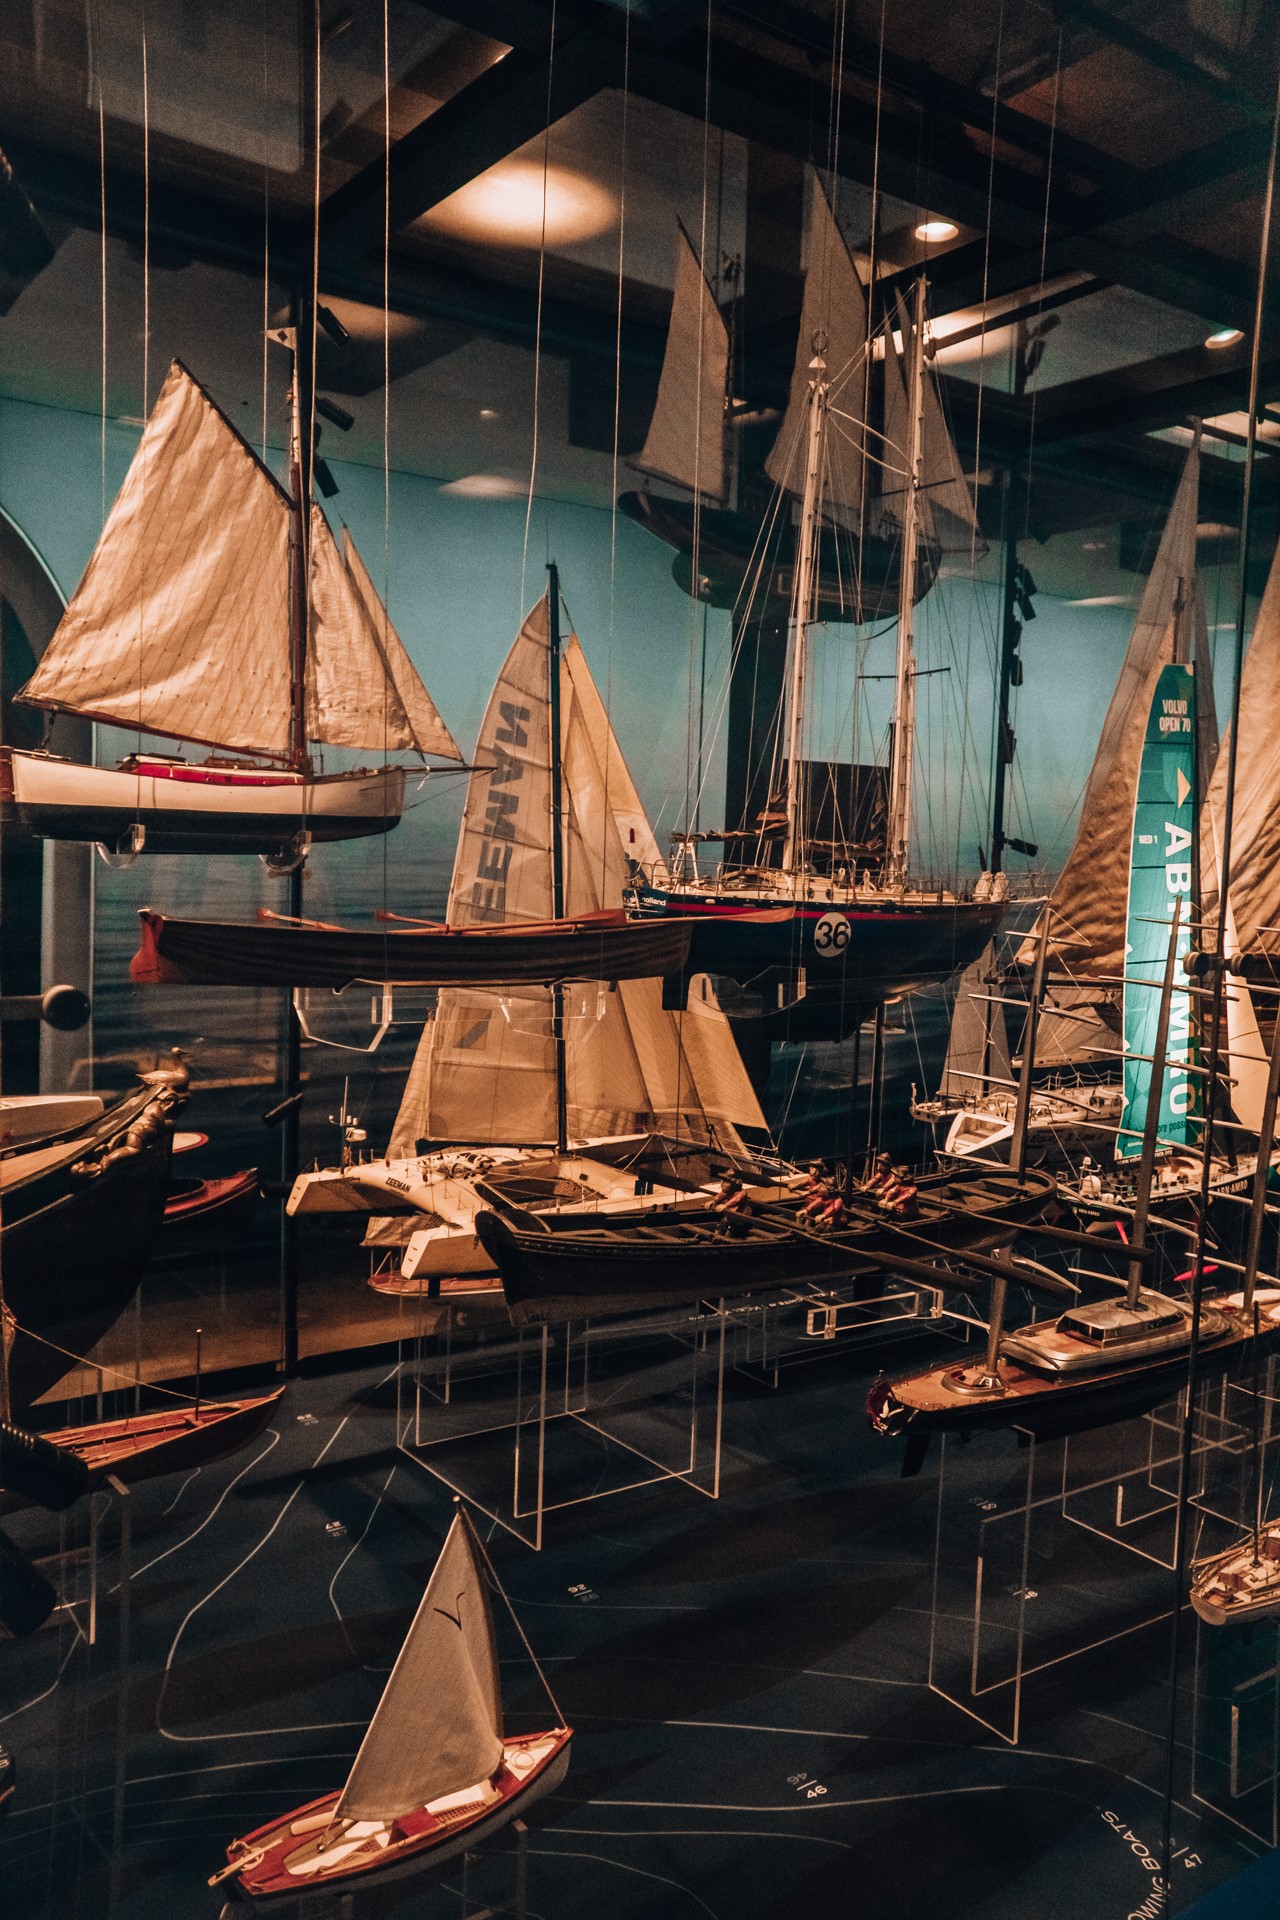 Wystawa statkow w Muzeum Morskim w Amsterdamie | Co zobaczyć w Amsterdamie?